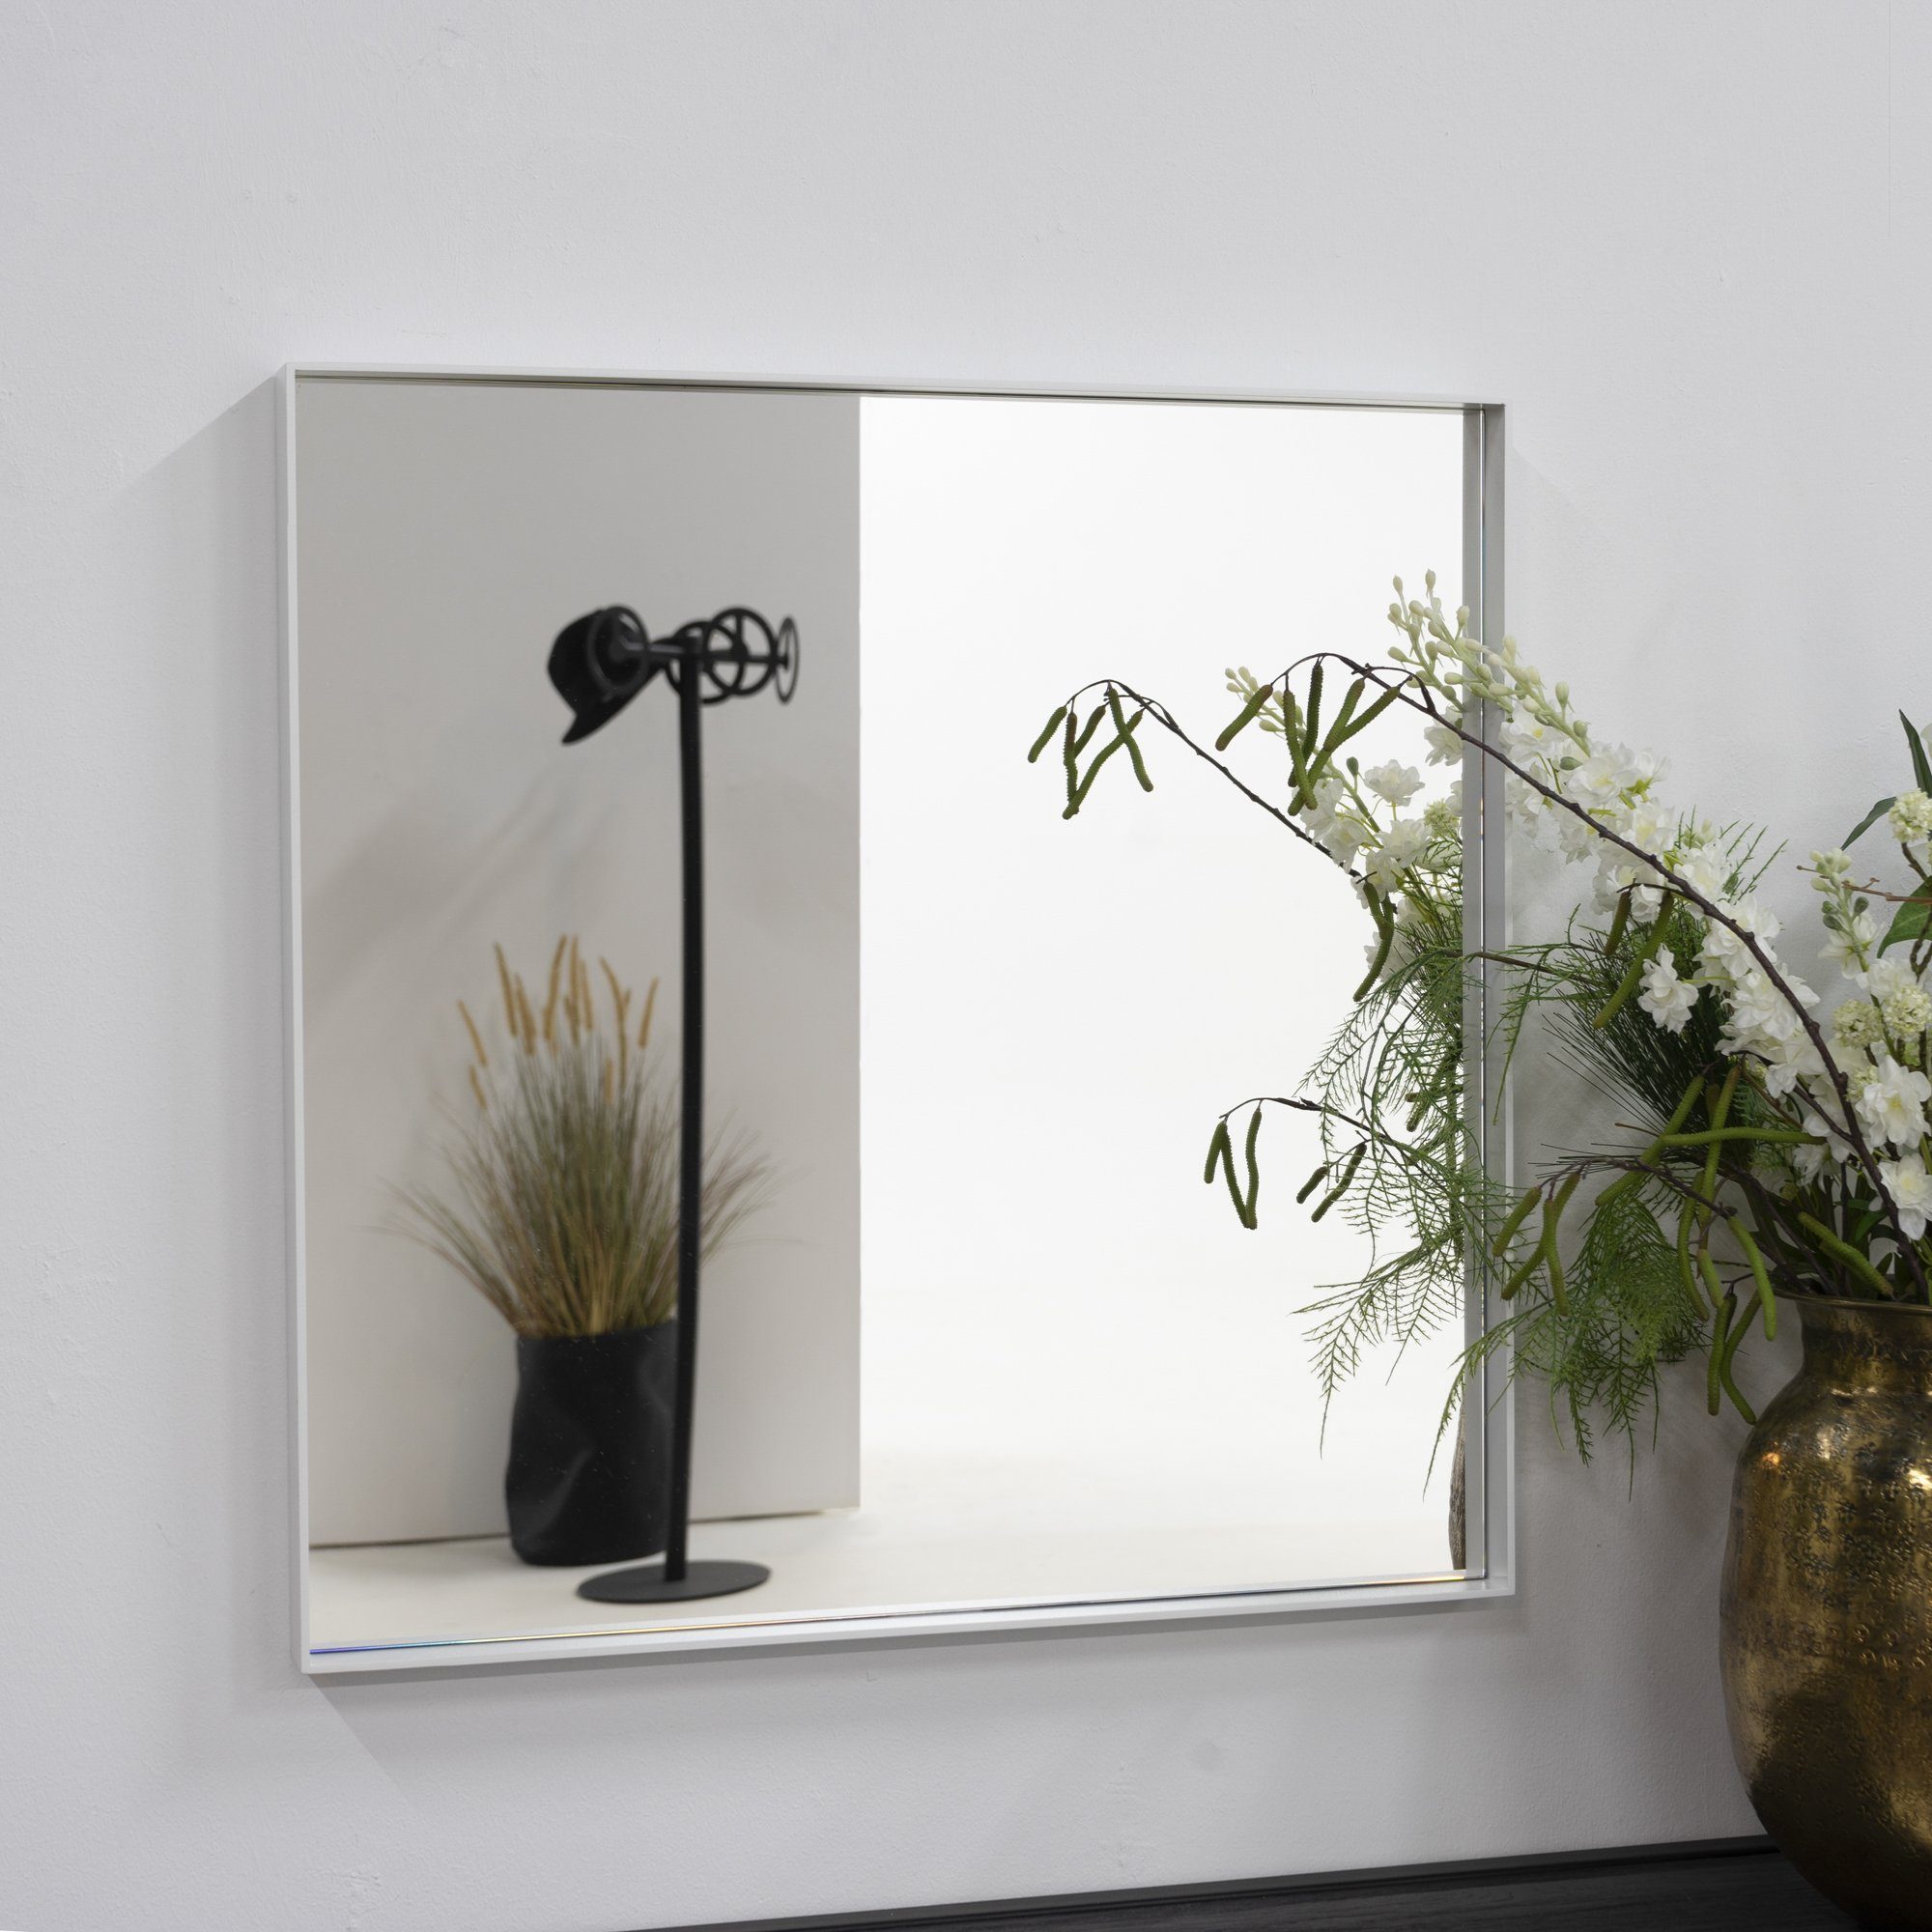 Donna Design | weiß Spiegel Spinder Eckig 2 Spinder Spiegel Weiß weiß 60x60cm